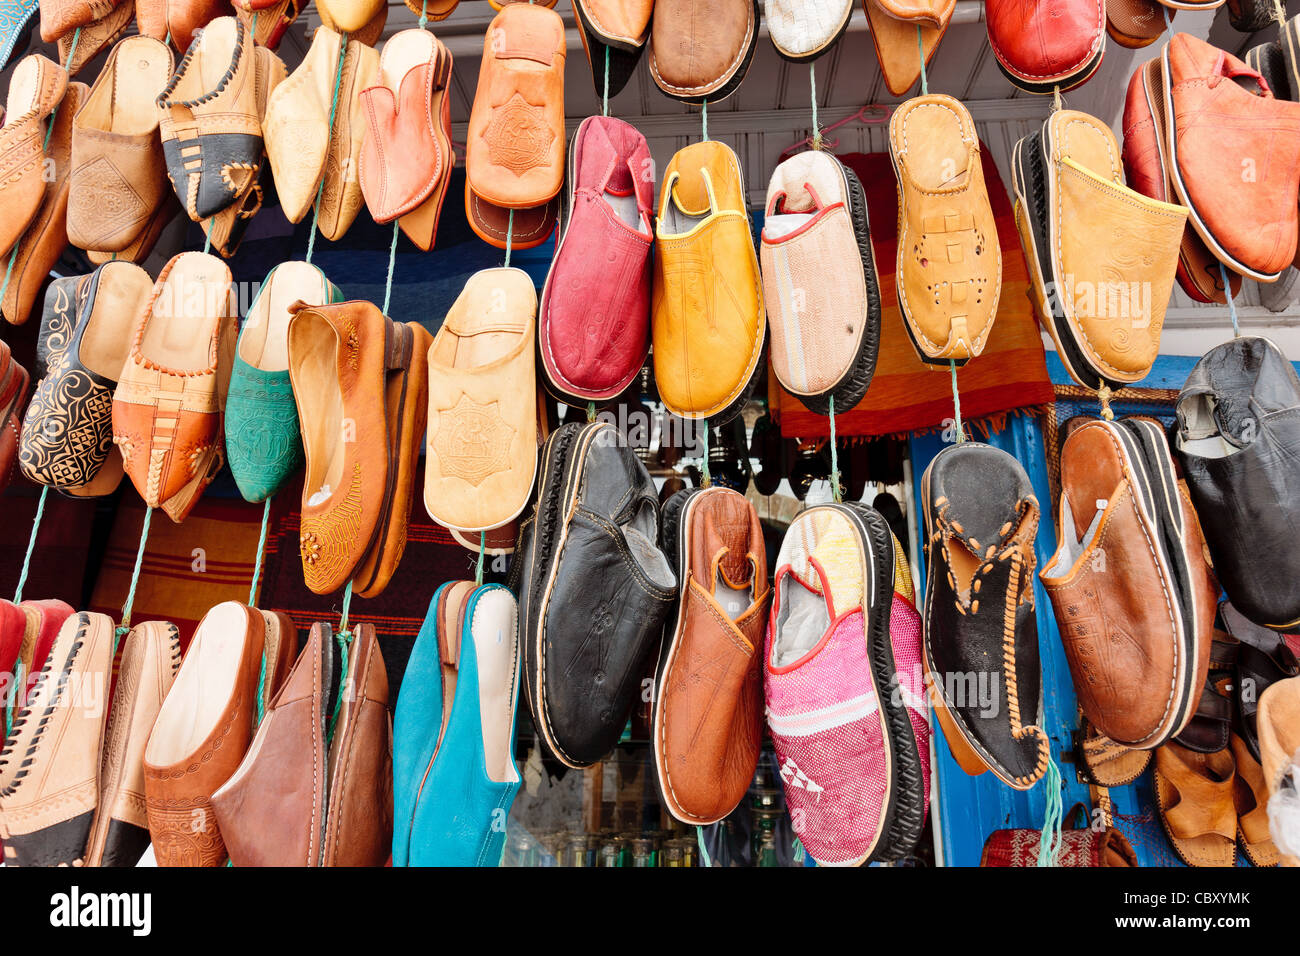 Chaussures arabe coloré de l'alignement dans un magasin Photo Stock - Alamy